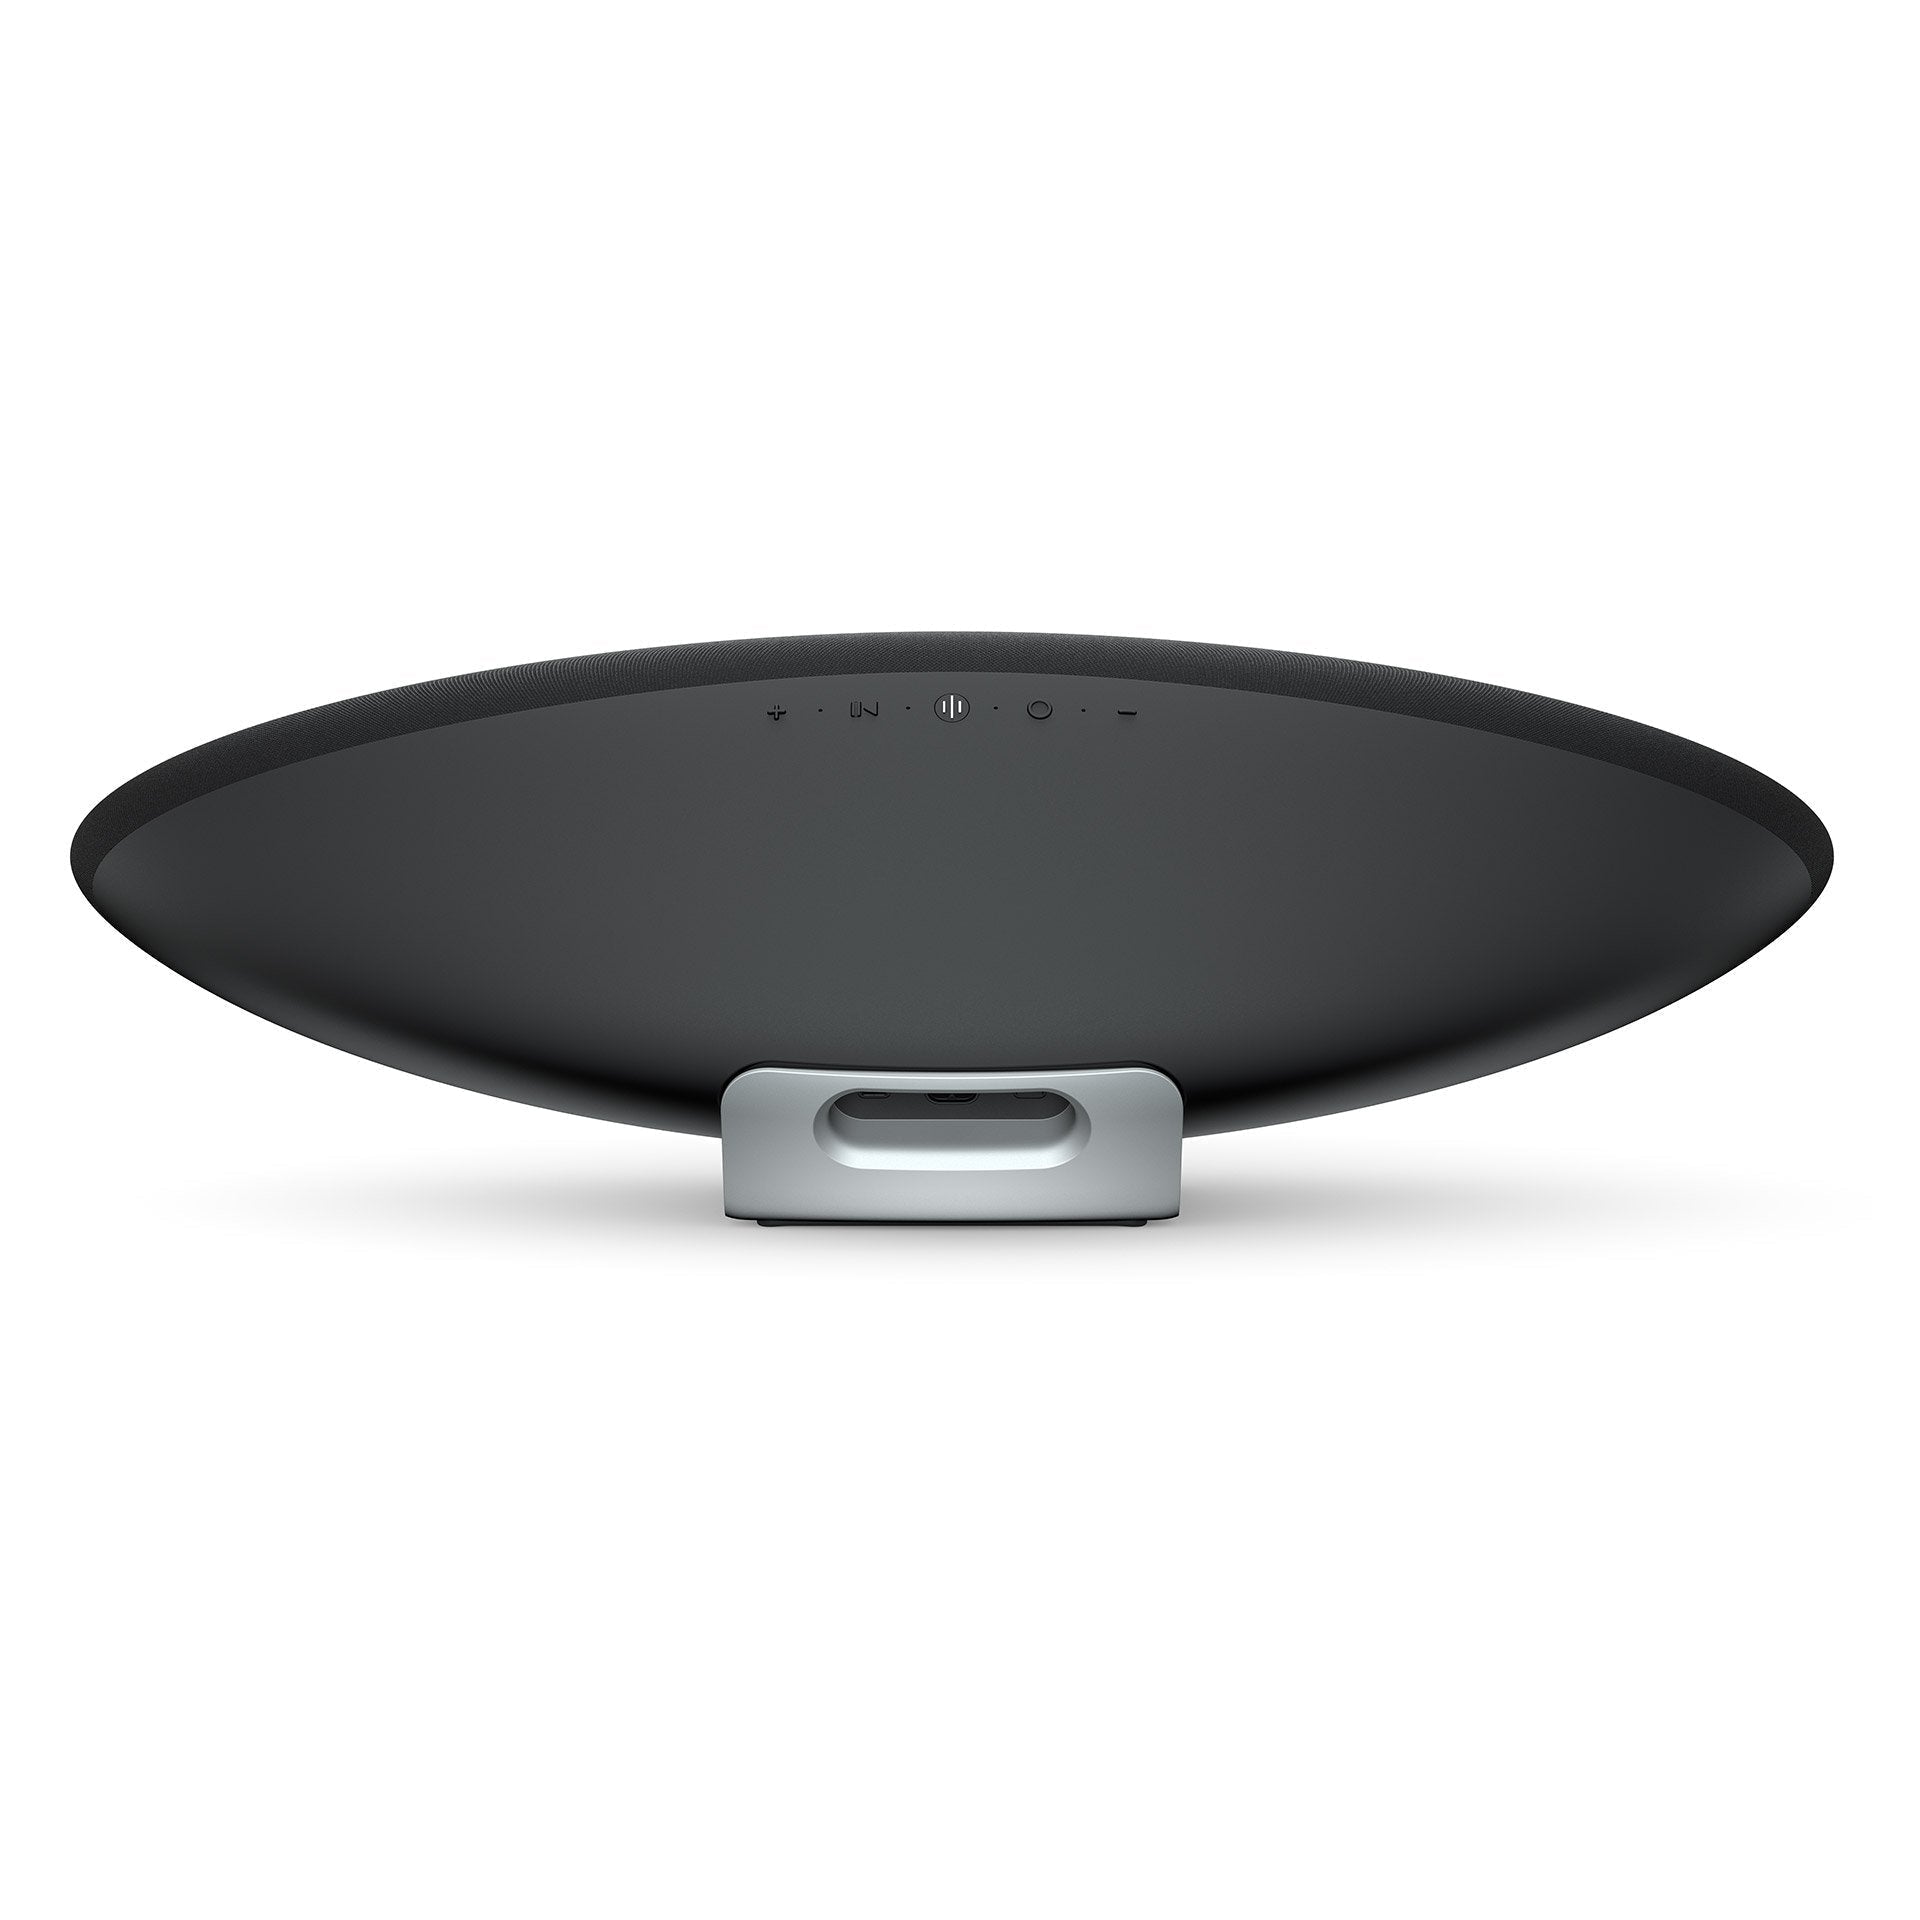 Bowers & Wilkins - Zeppelin - Wireless Smart Speaker Australia